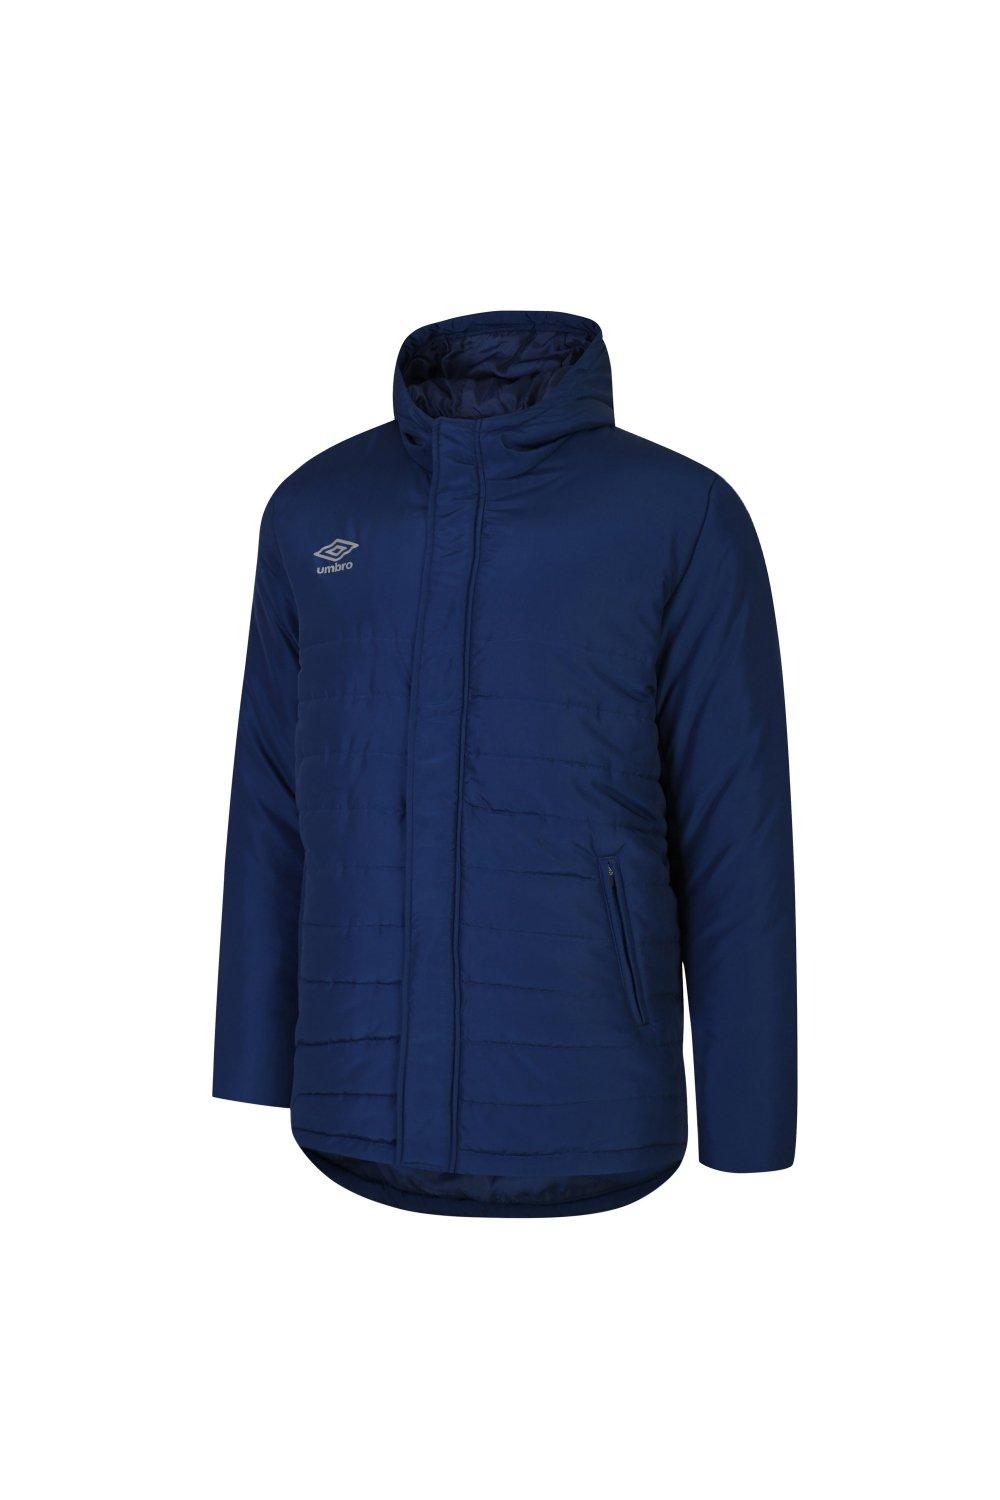 Утепленная куртка для скамейки Umbro, темно-синий куртка umbro силуэт свободный утепленная размер xxl синий